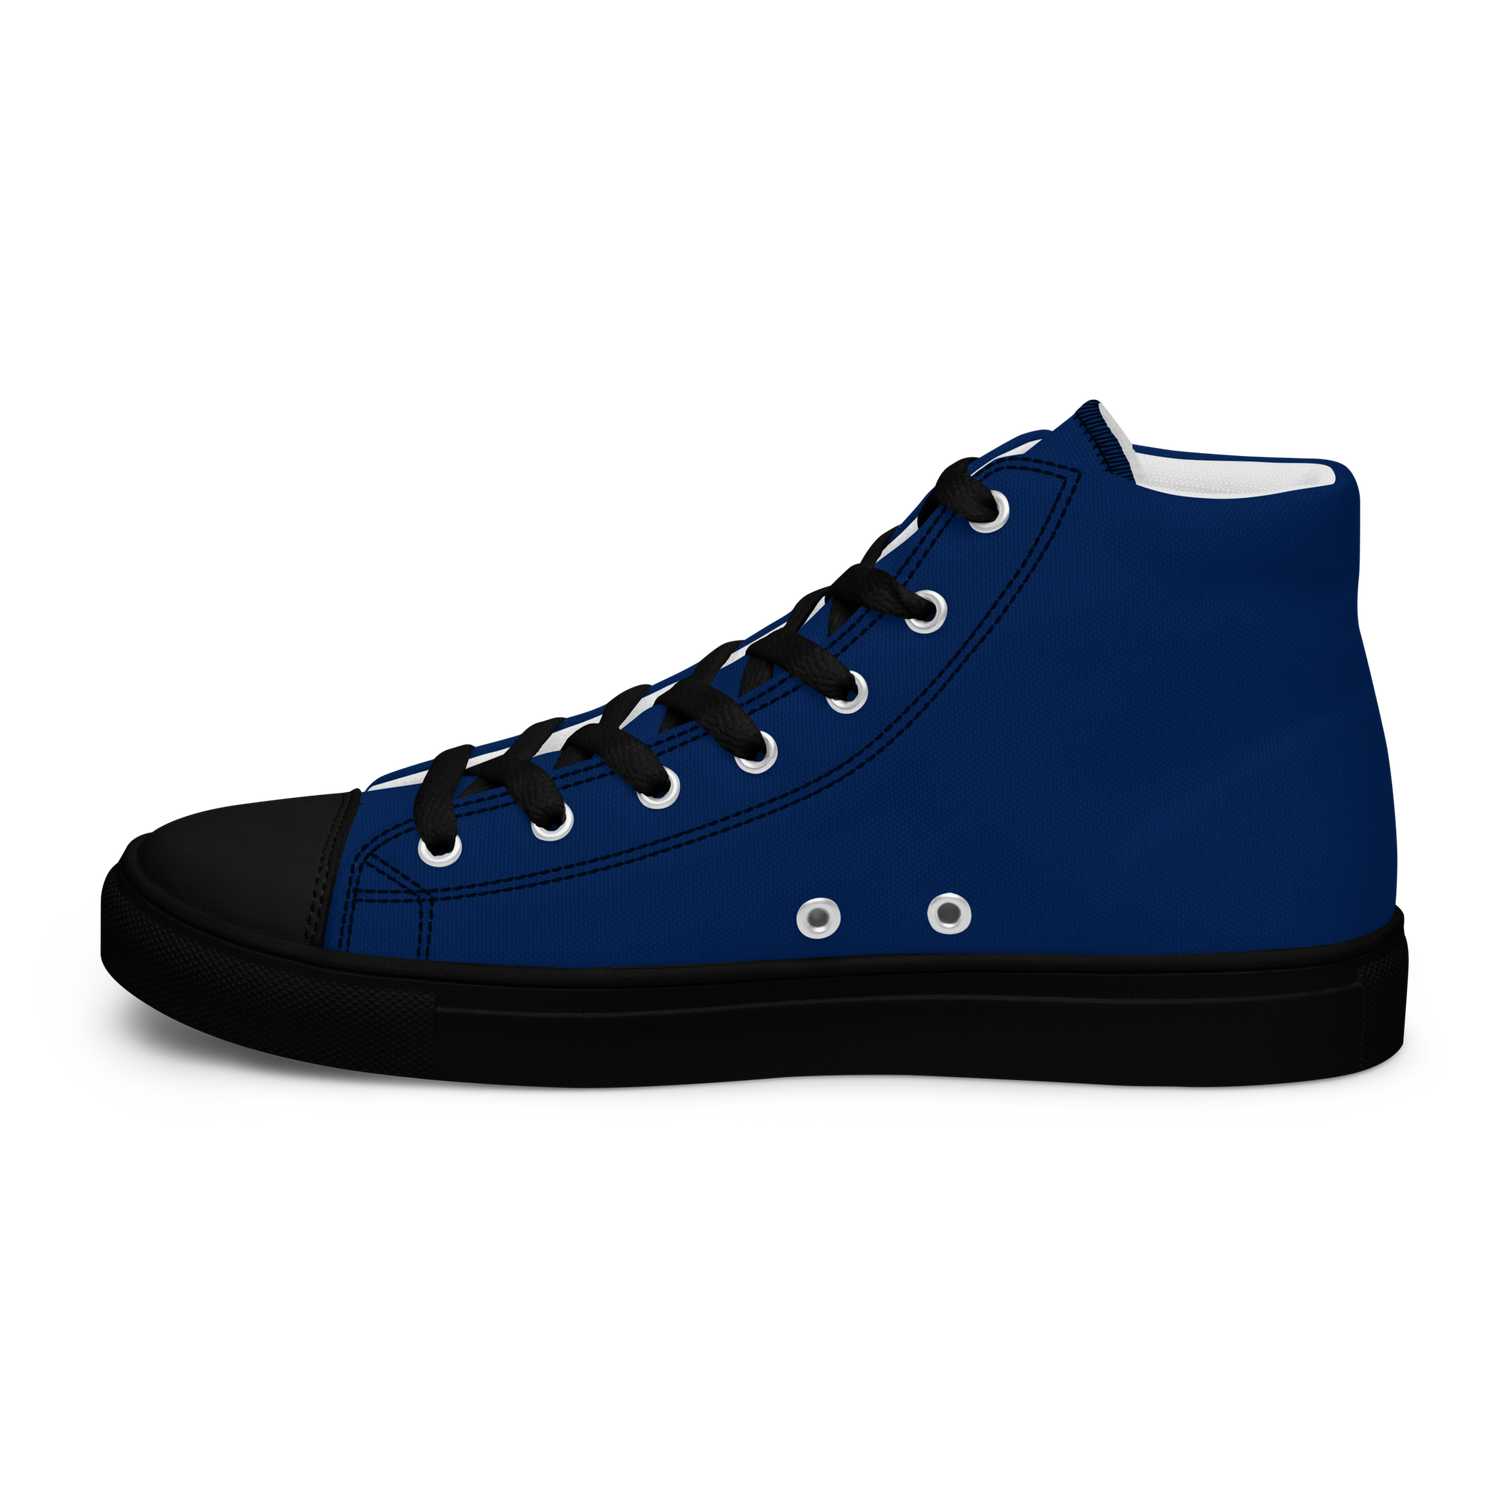 Men’s Navy Blue High Top Sneaker